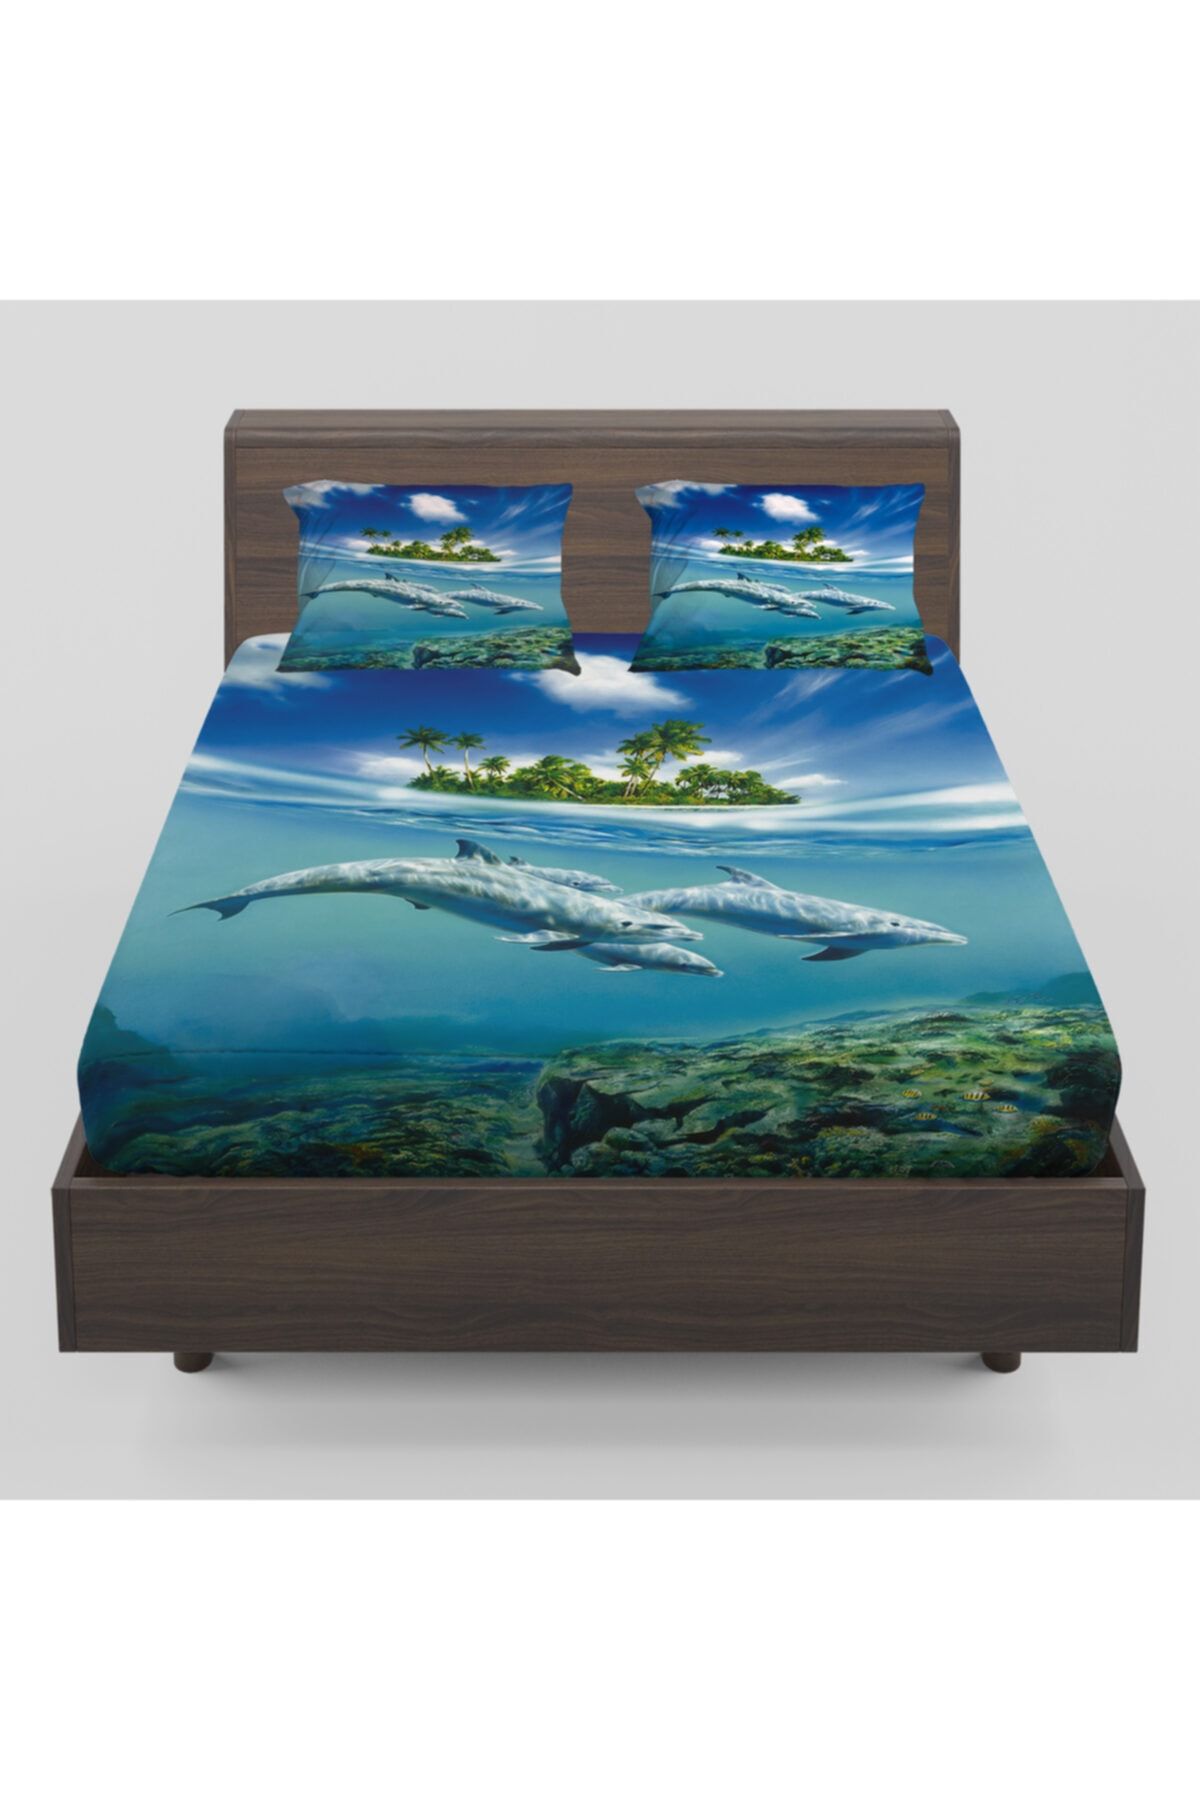 Else Halı Else Mavi Yunuslar Deniz Altı Desenli Lastikli Çift Kişilik Lastikli Çarşaf Takımı 160x200cm